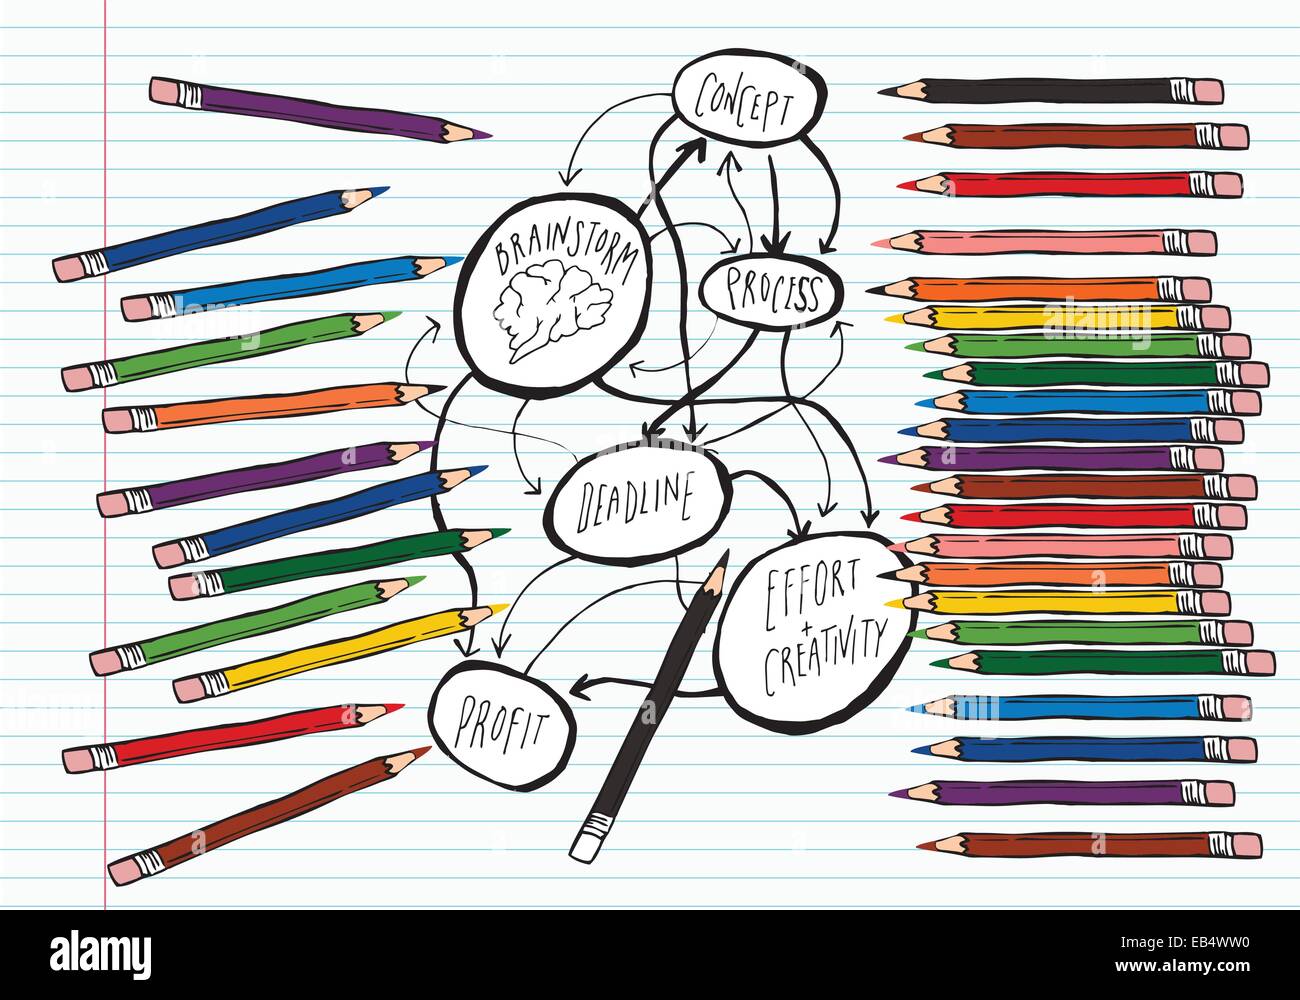 Bleistifte und Brainstorm Flussdiagramm Stock Vektor